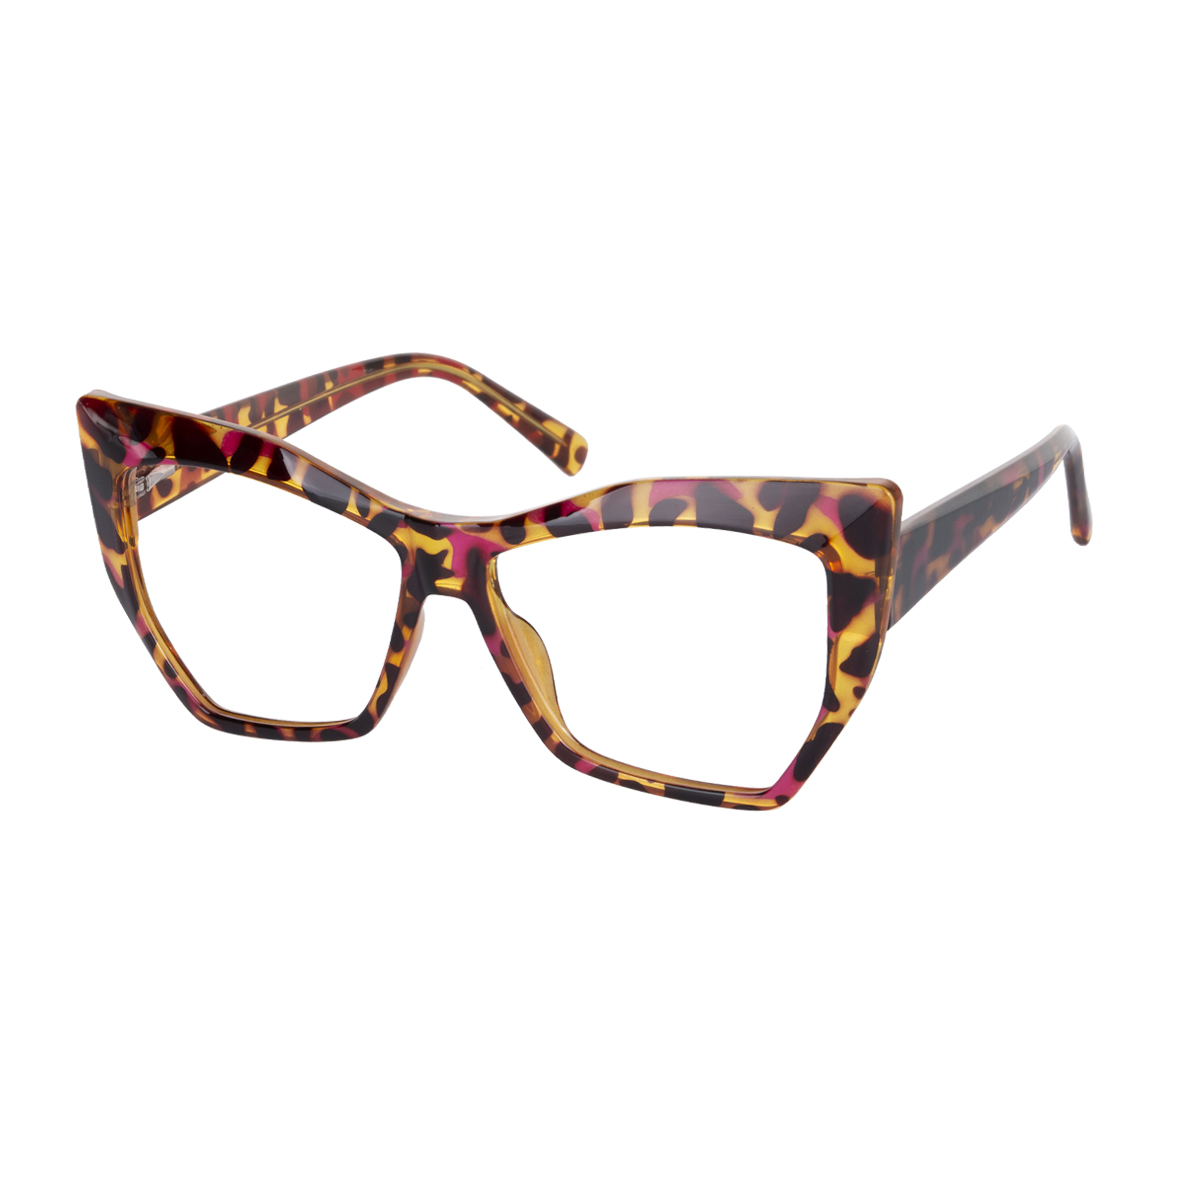 Lora - Cat-eye Tortoiseshell Glasses for Women - EFE